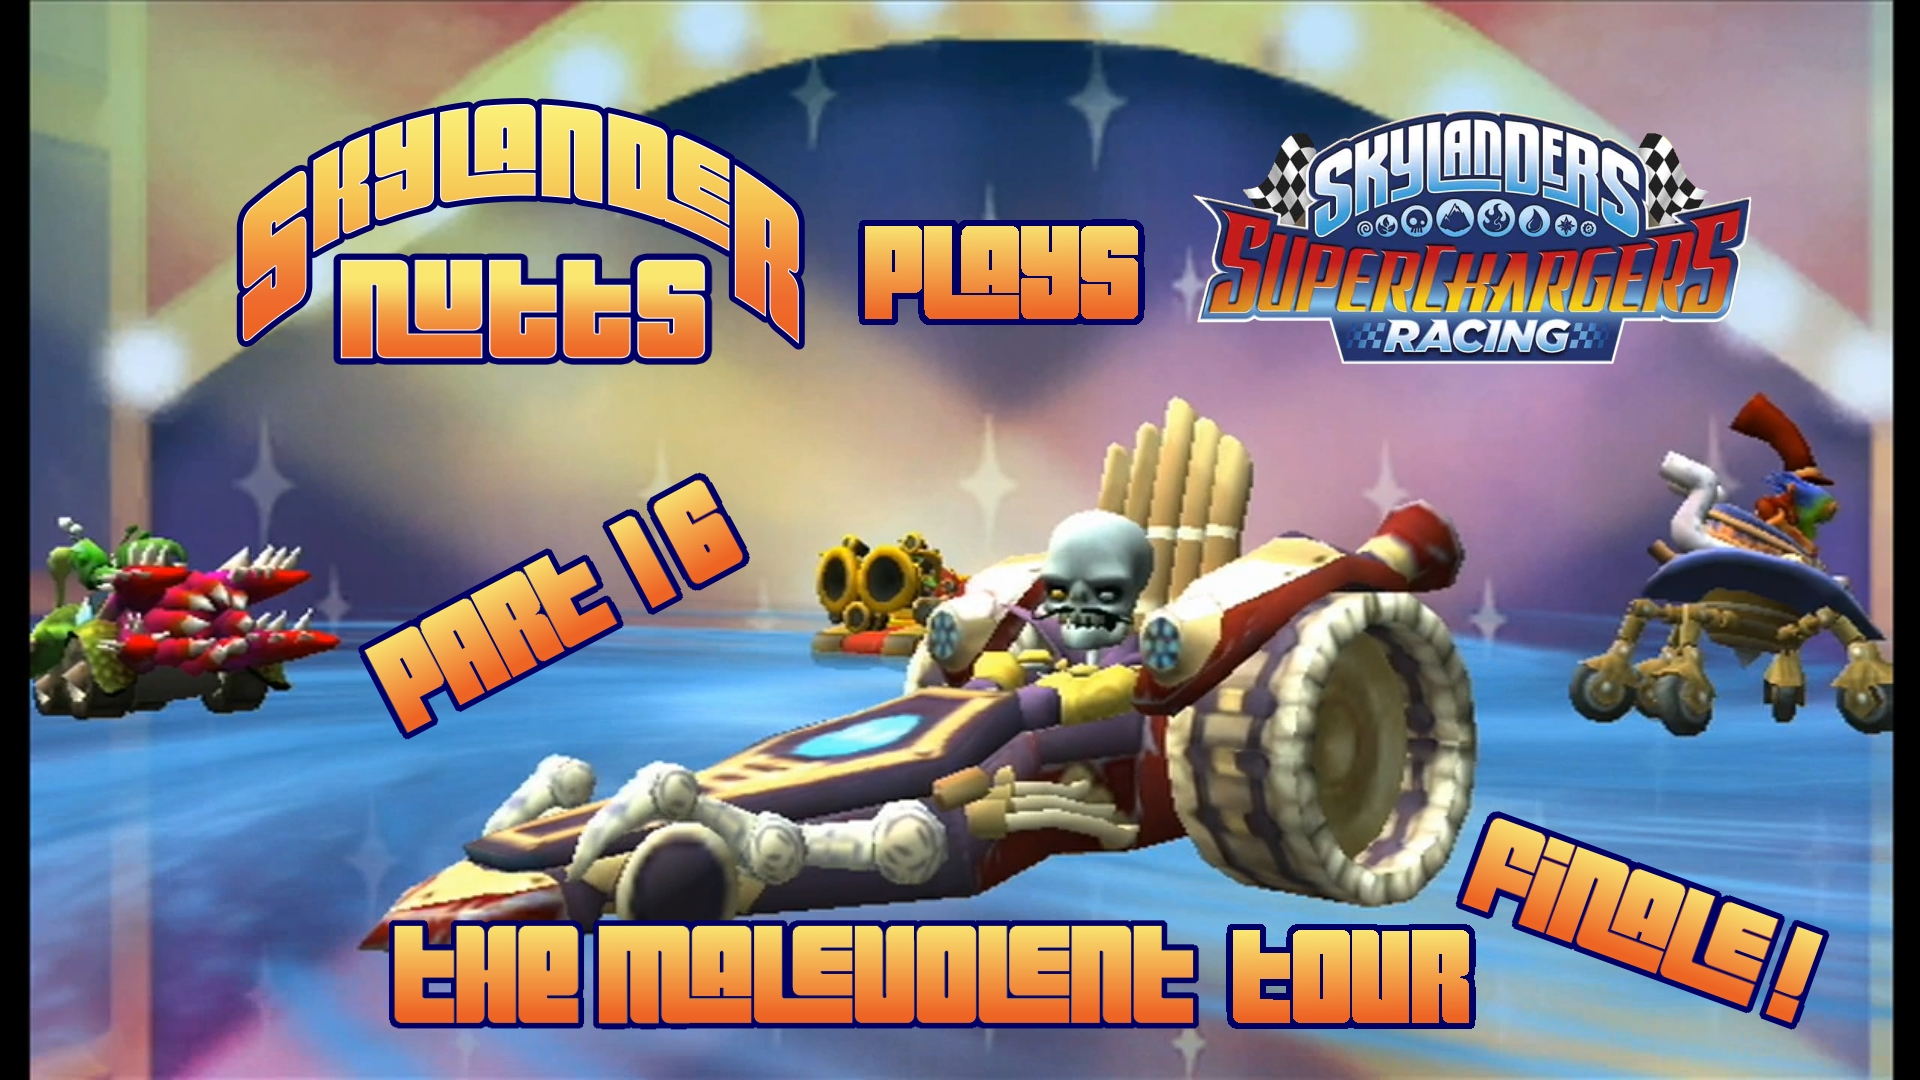 SuperChargers Racing Part 16 - The Malevolent Tour Finale